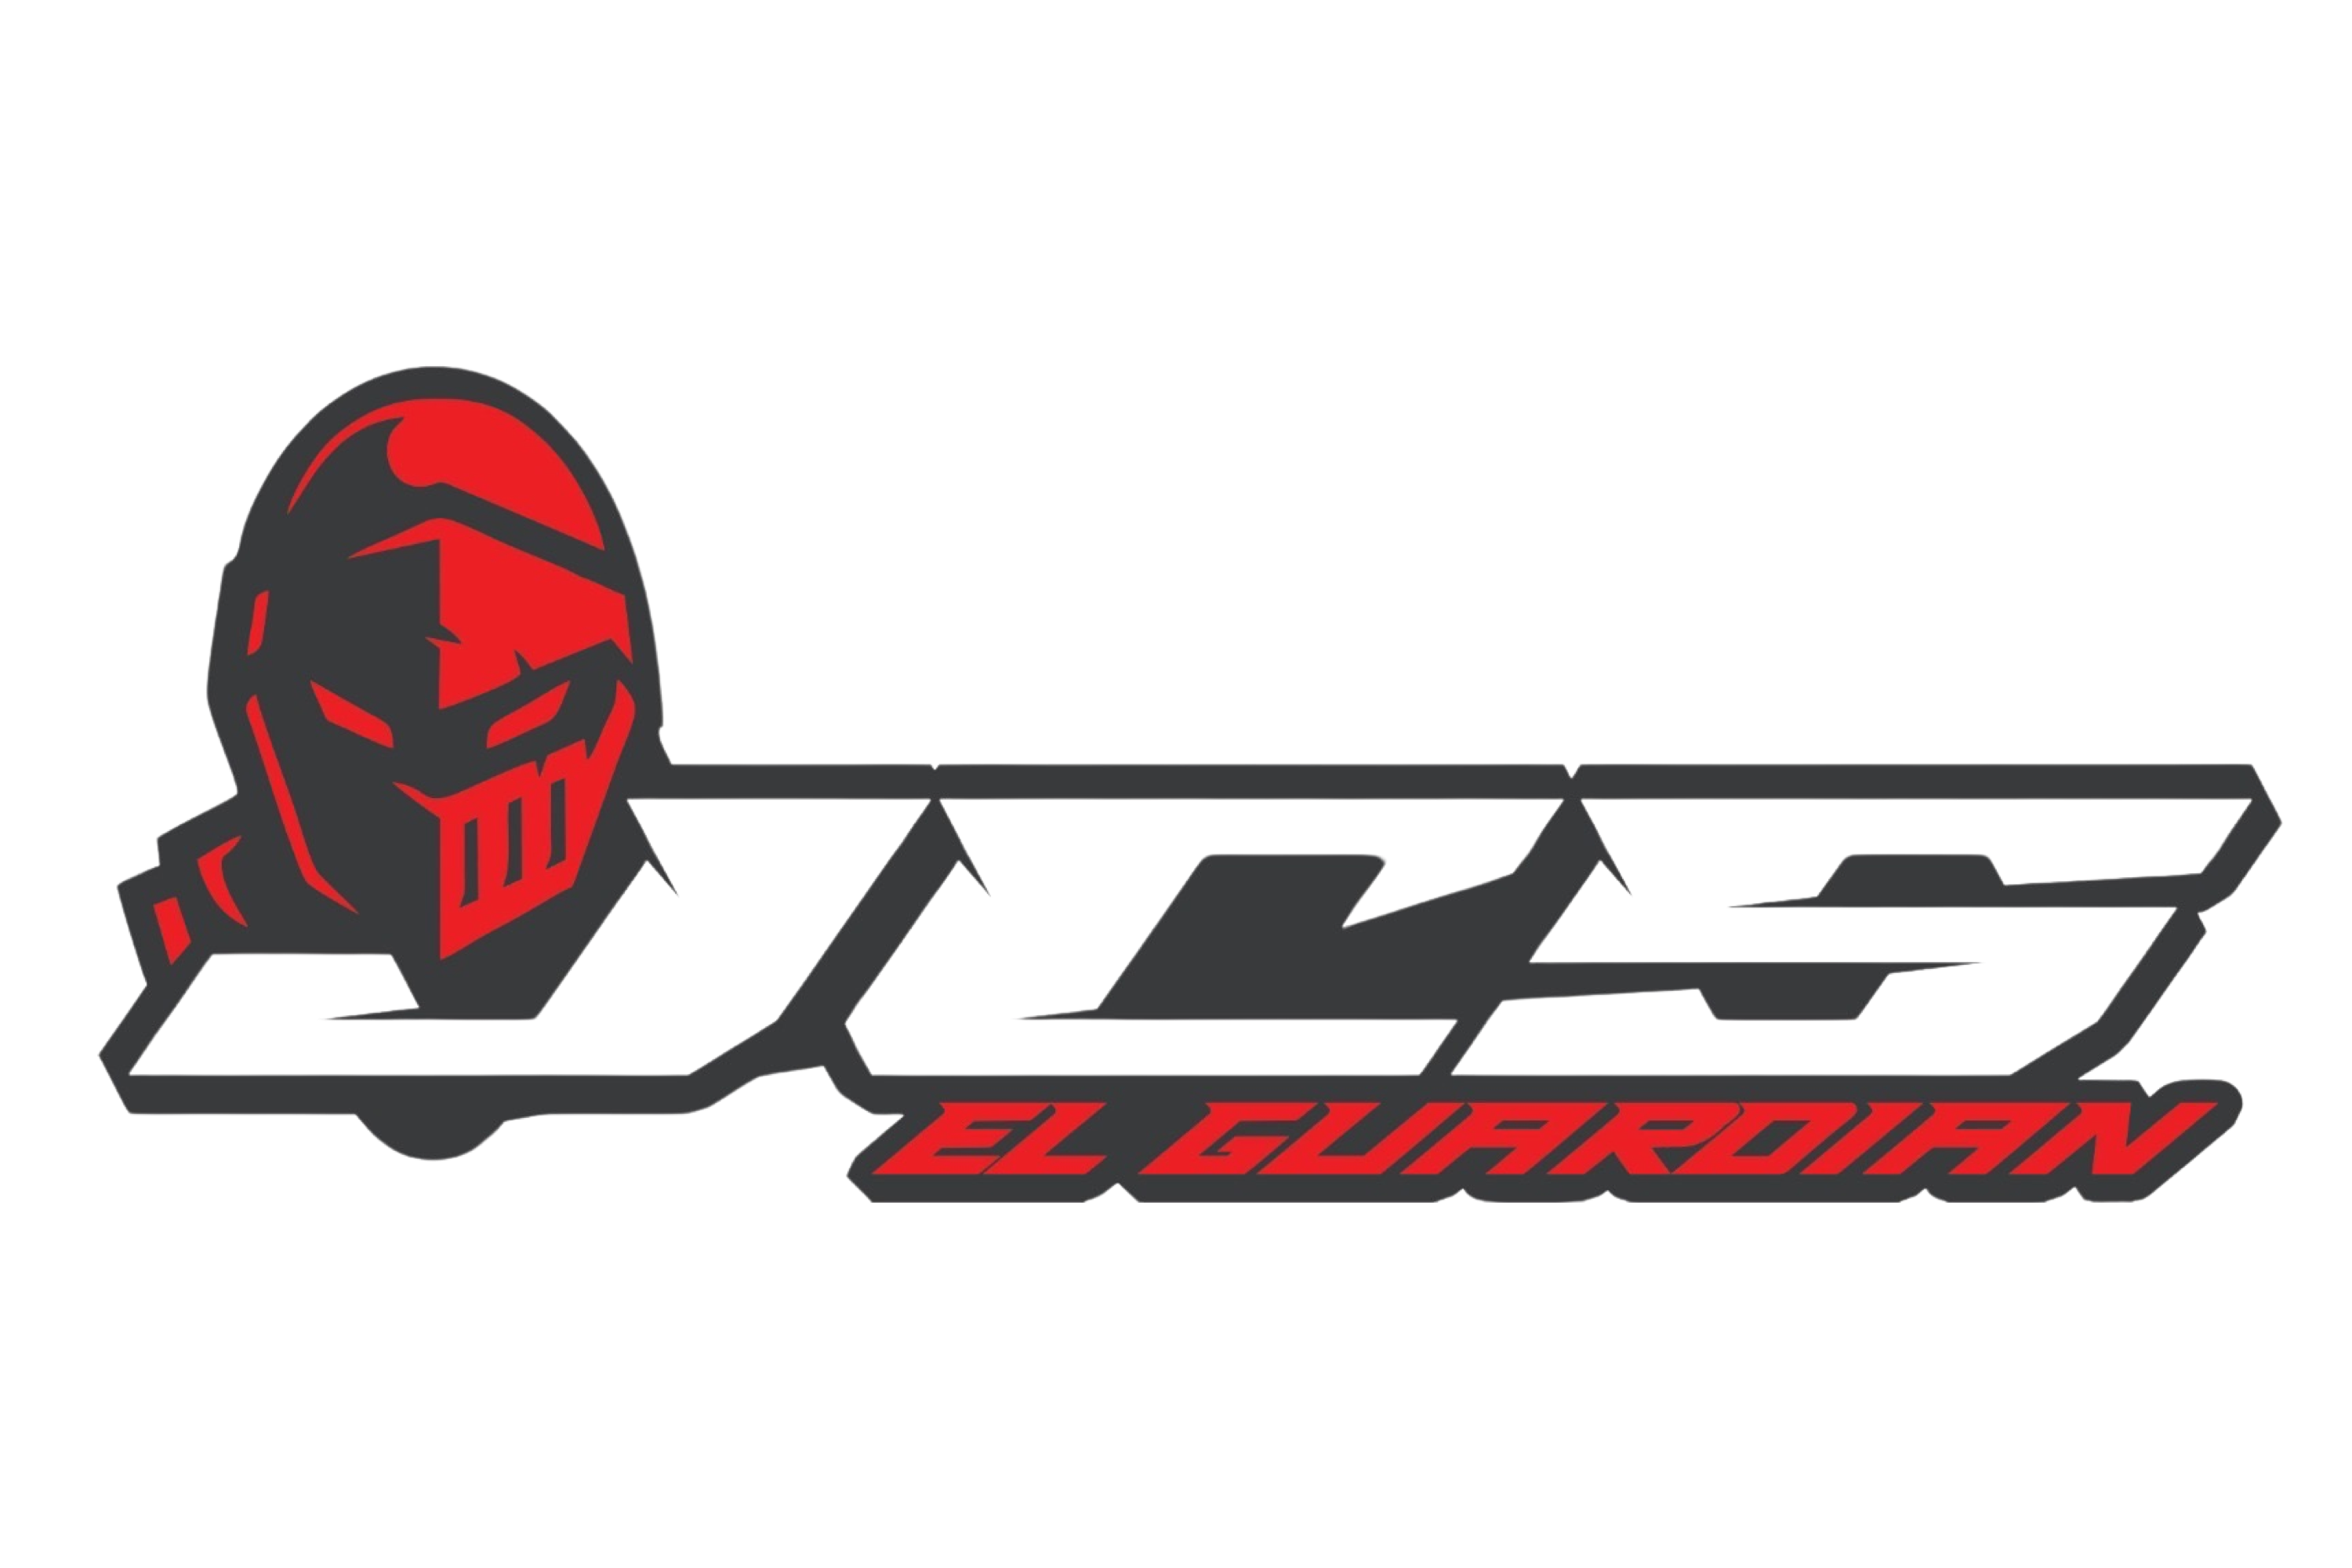 jcs logo (2)